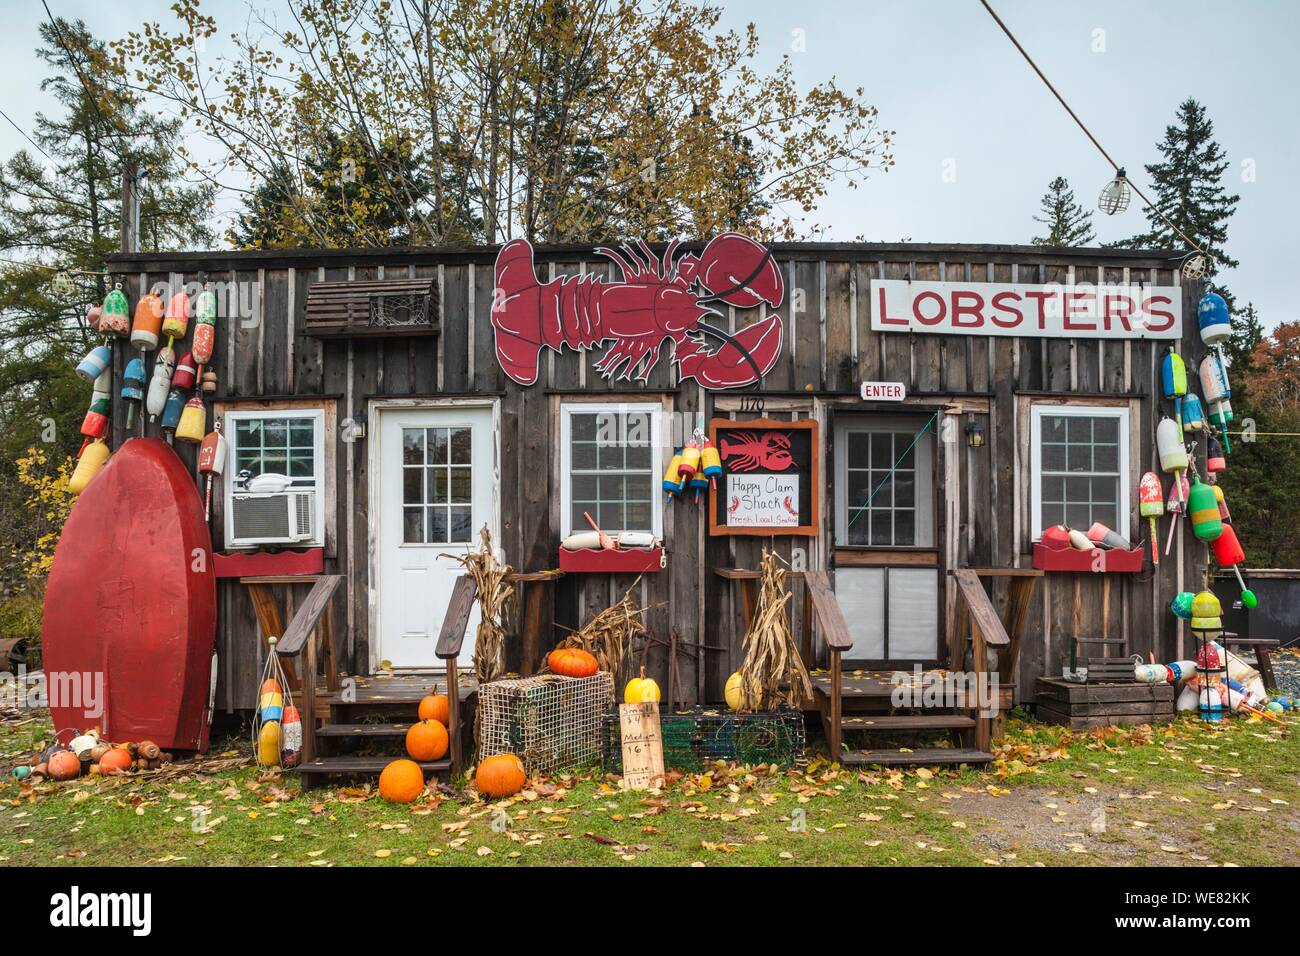 Etats-unis (Maine), Mt. Île déserte, Eden, homard traditionnel shack restaurant de fruits de mer, automne Banque D'Images